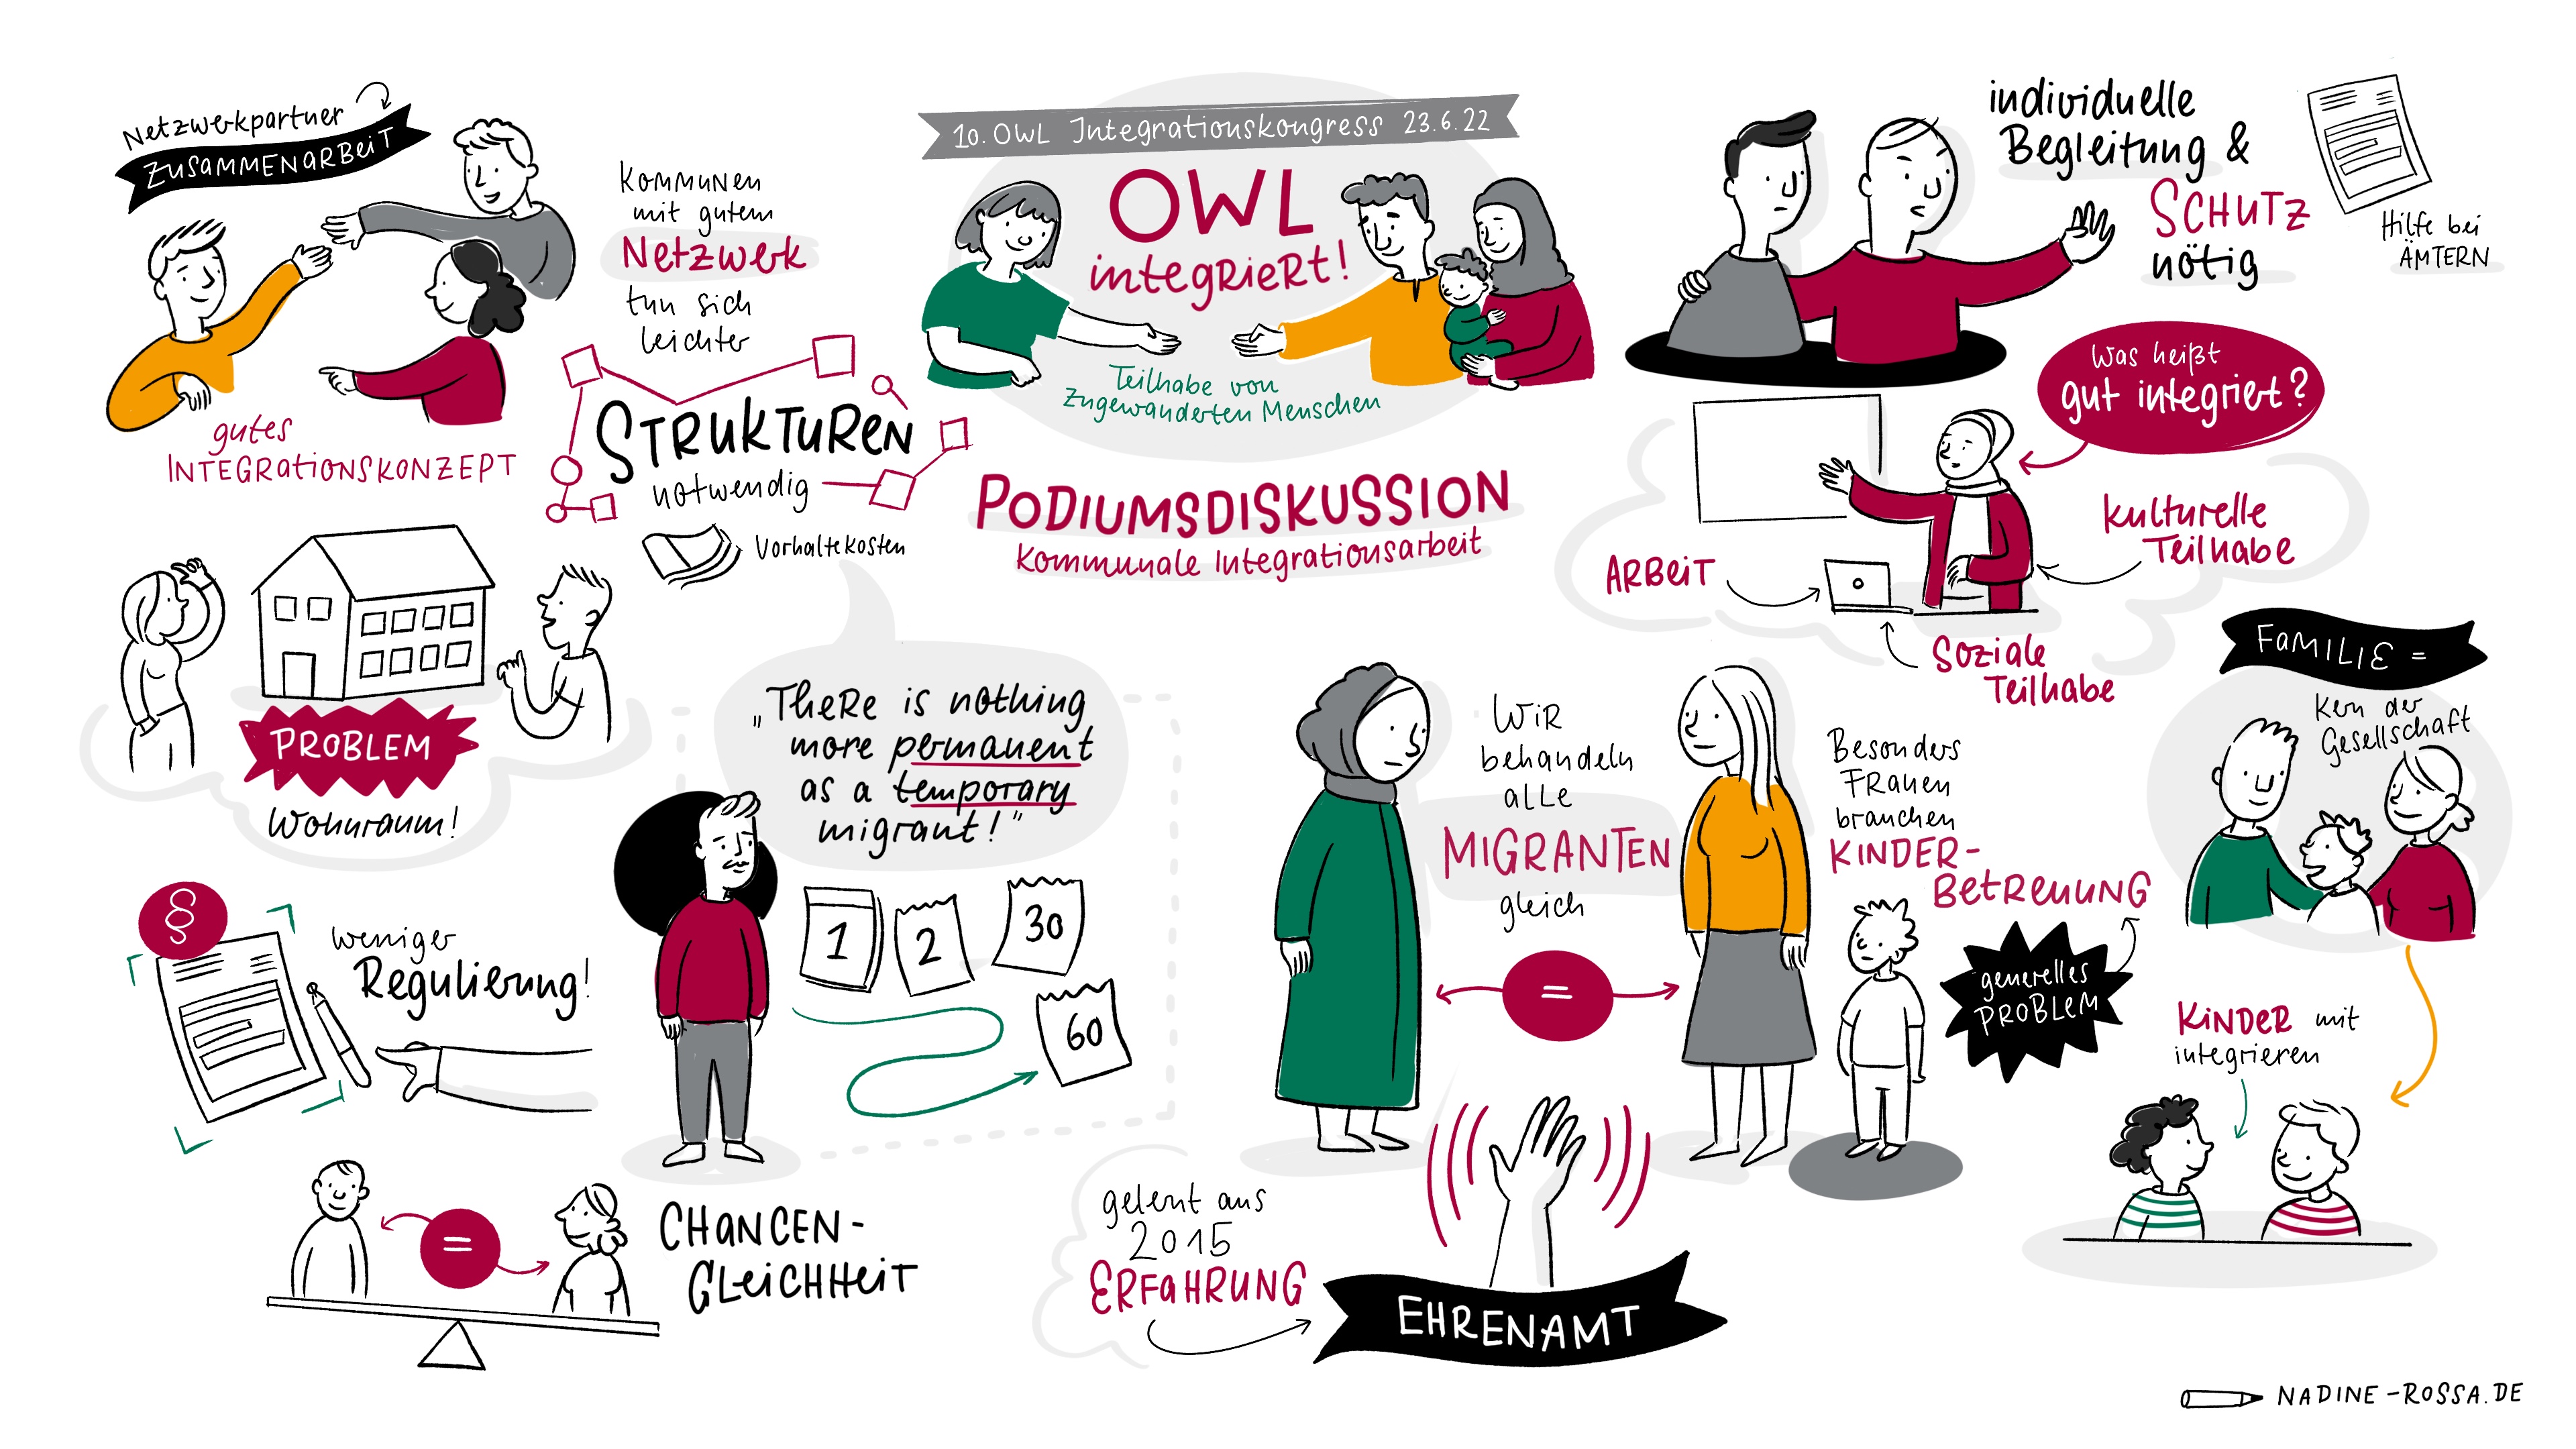 Bericht zum 10. OWL-Integrationskongress – neue Wege im digitalen Format